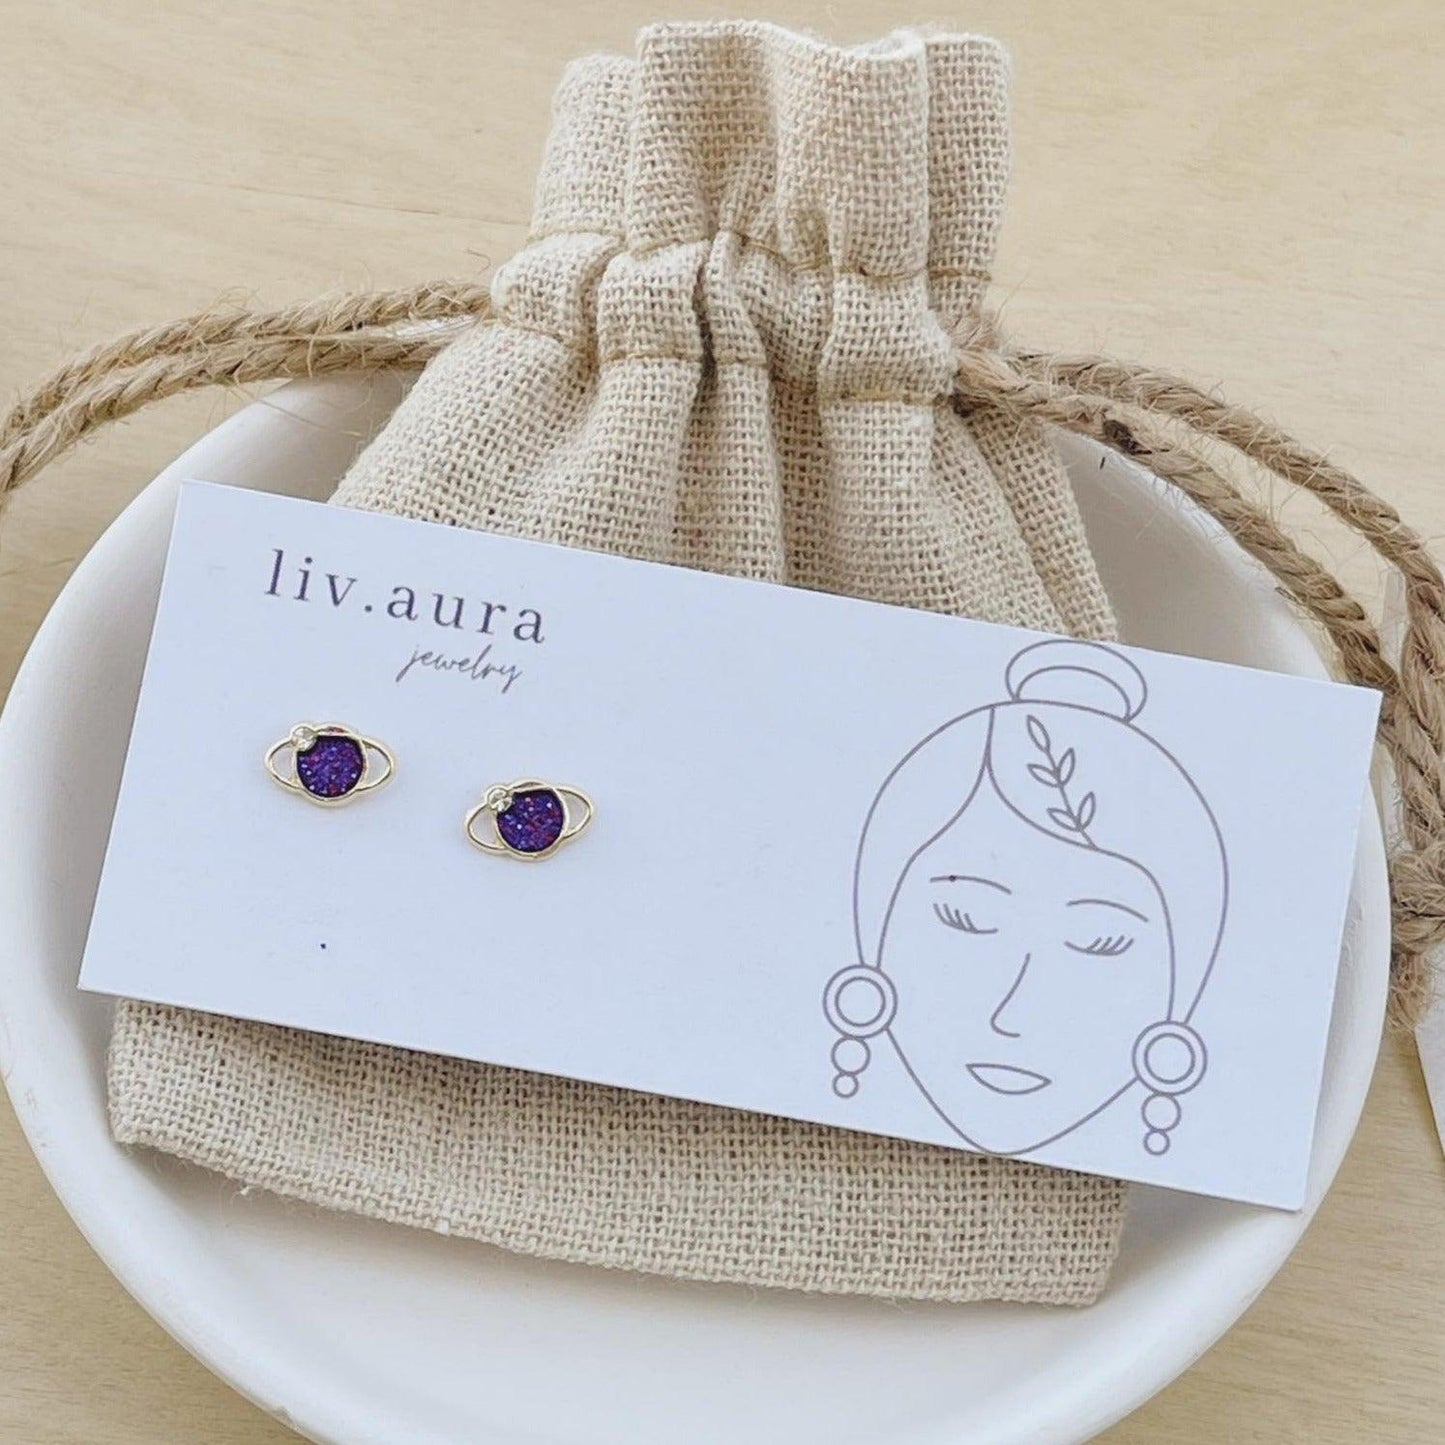 10k Gold Celestial Galaxy Earrings - Liv.Aura Jewelry